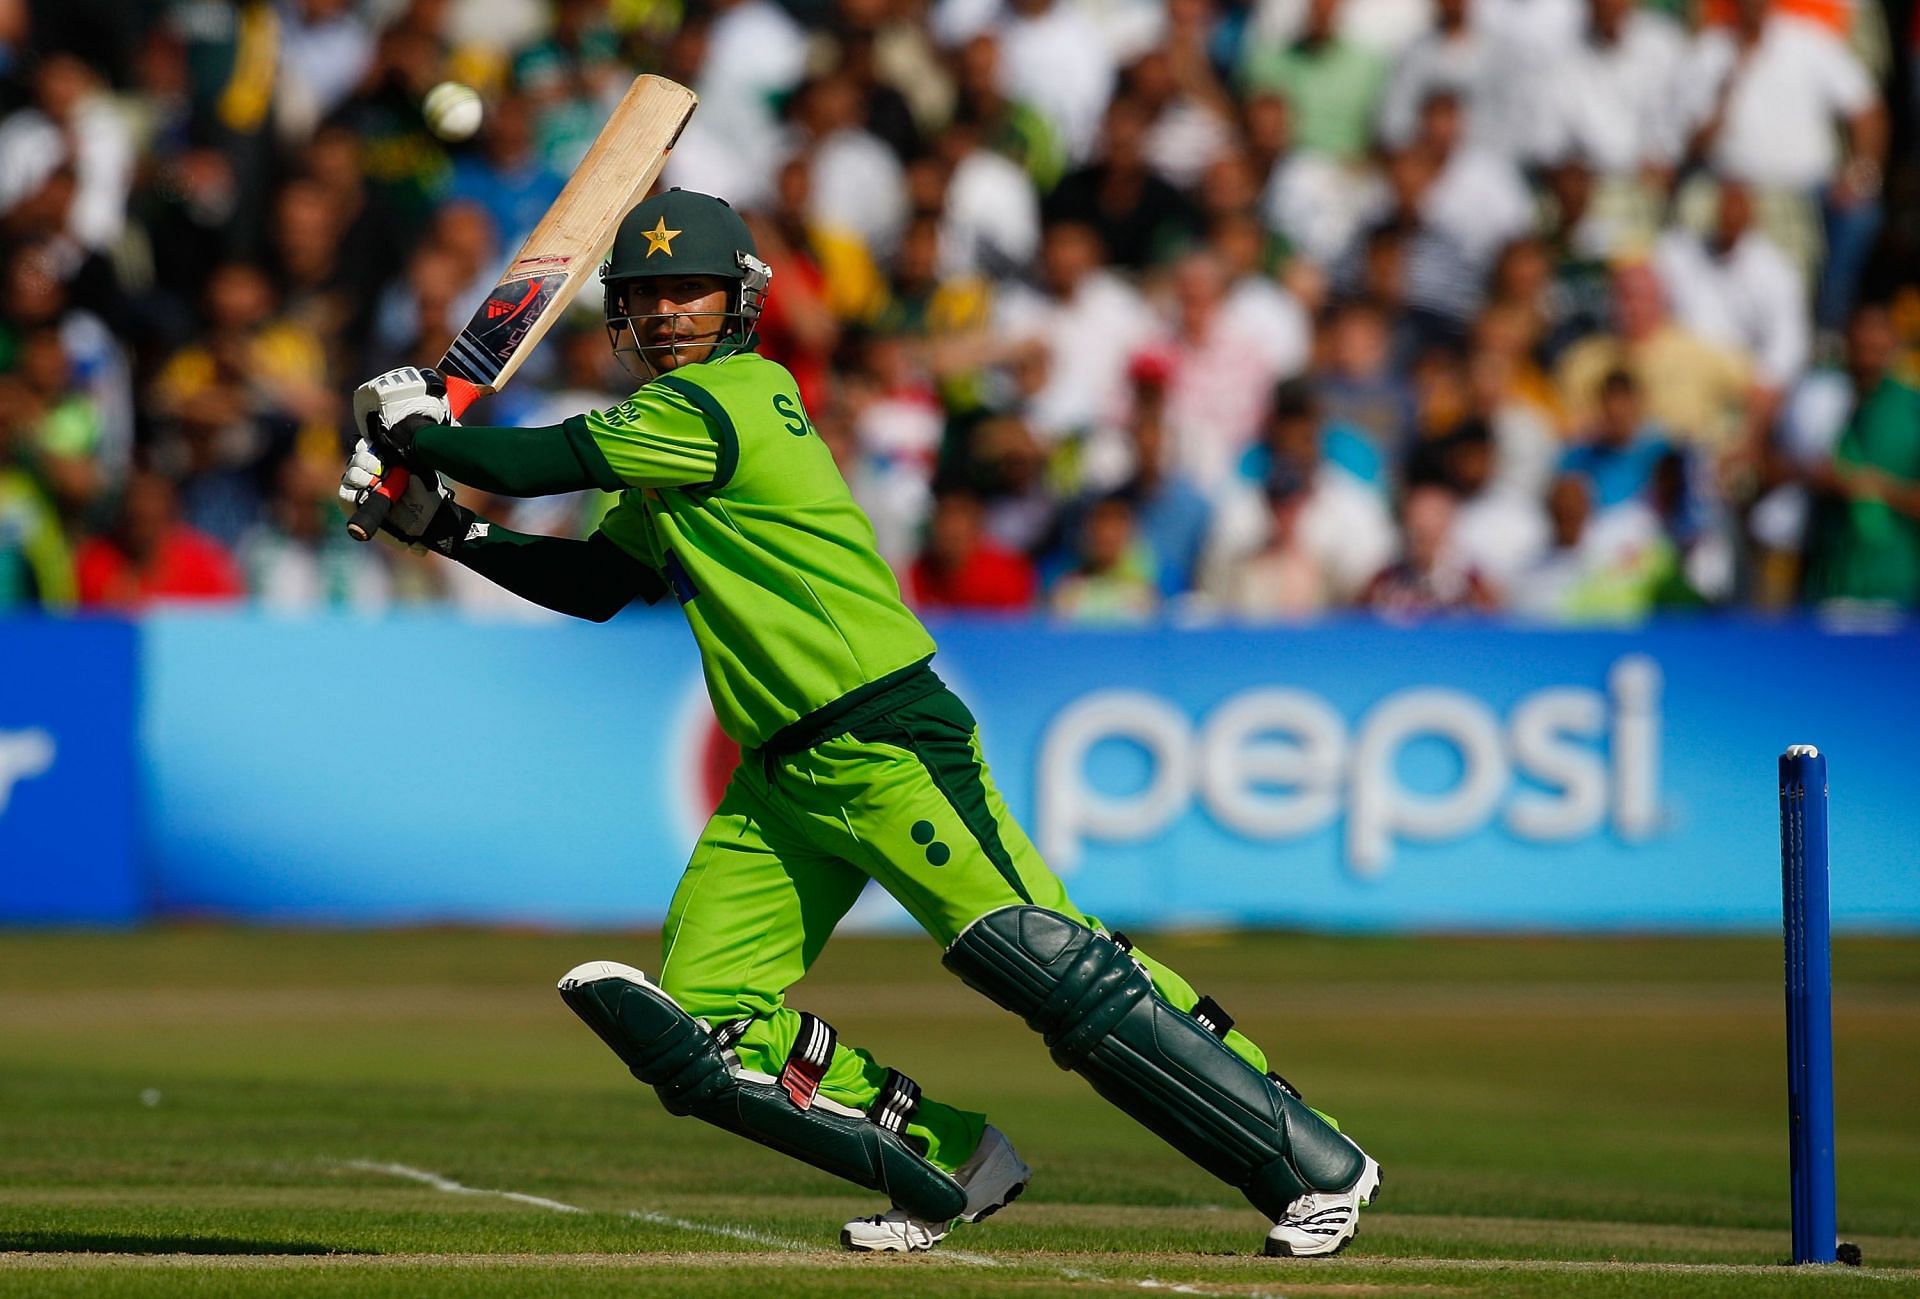 Pakistan v Australia - 1st Twenty20 International